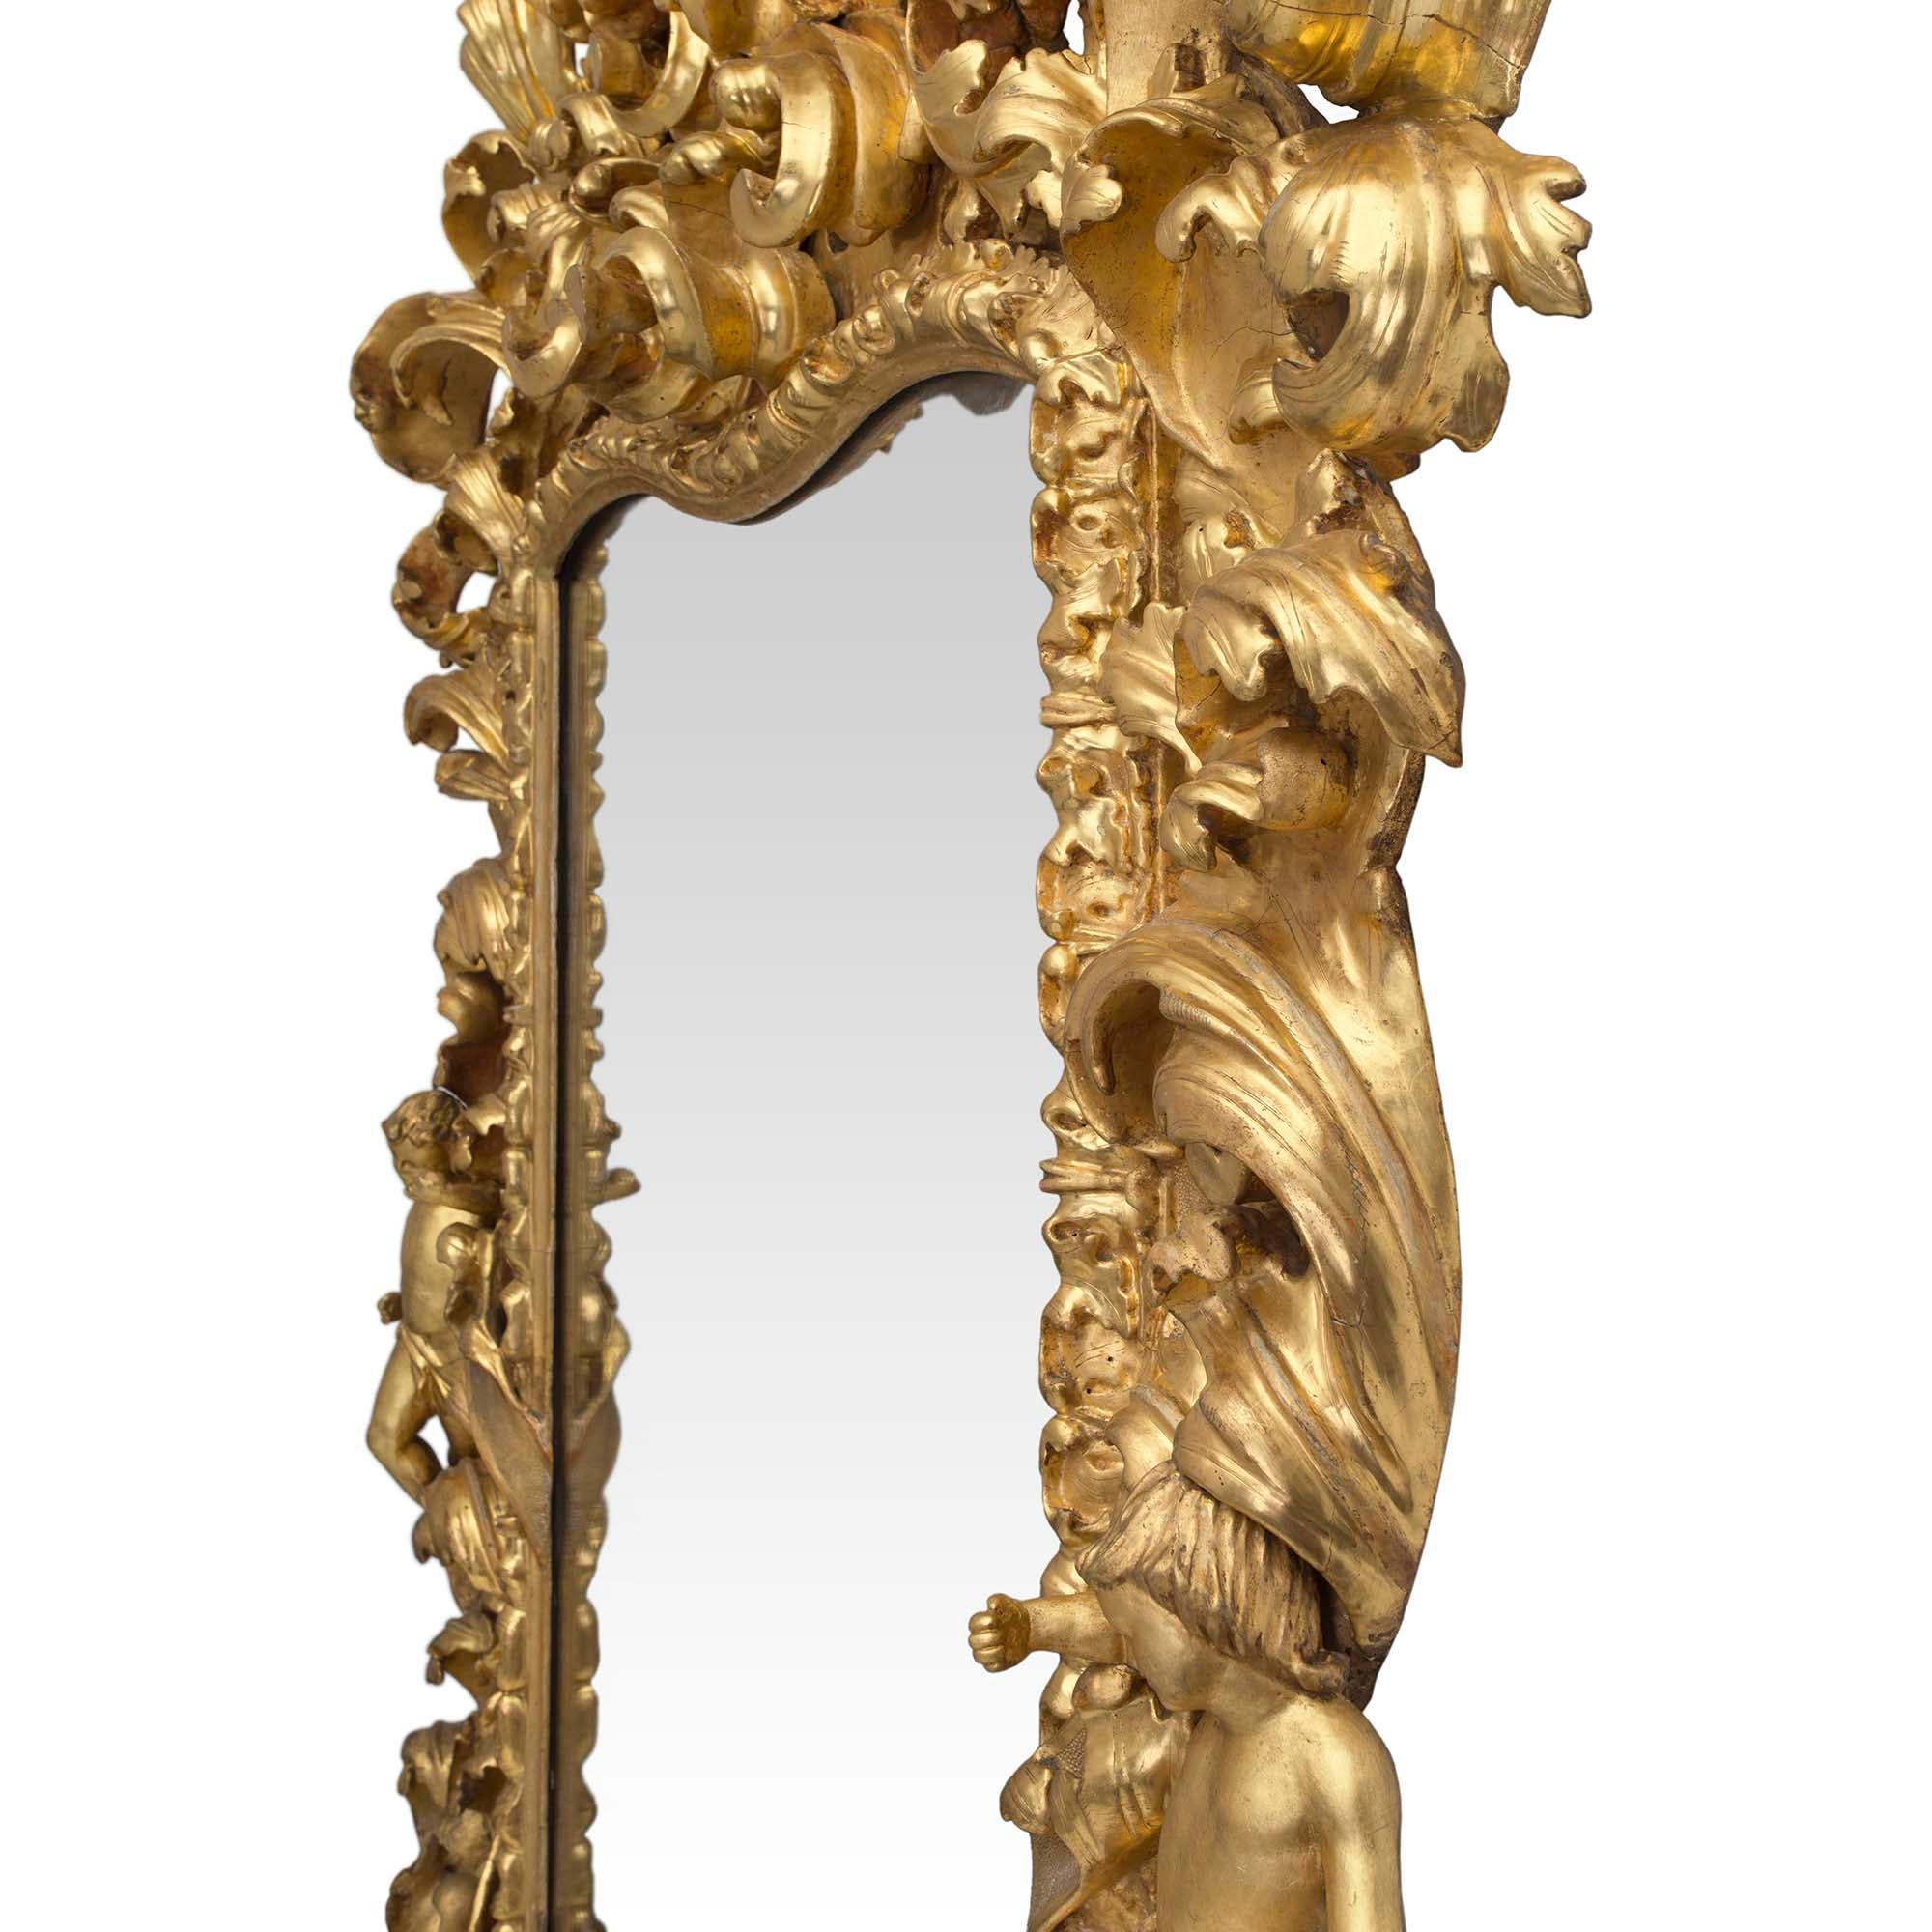 Un spectaculaire et très impressionnant miroir en bois doré baroque italien du 17ème siècle de style Louis XIV. Le miroir est surélevé par deux supports fantaisistes à volutes en 